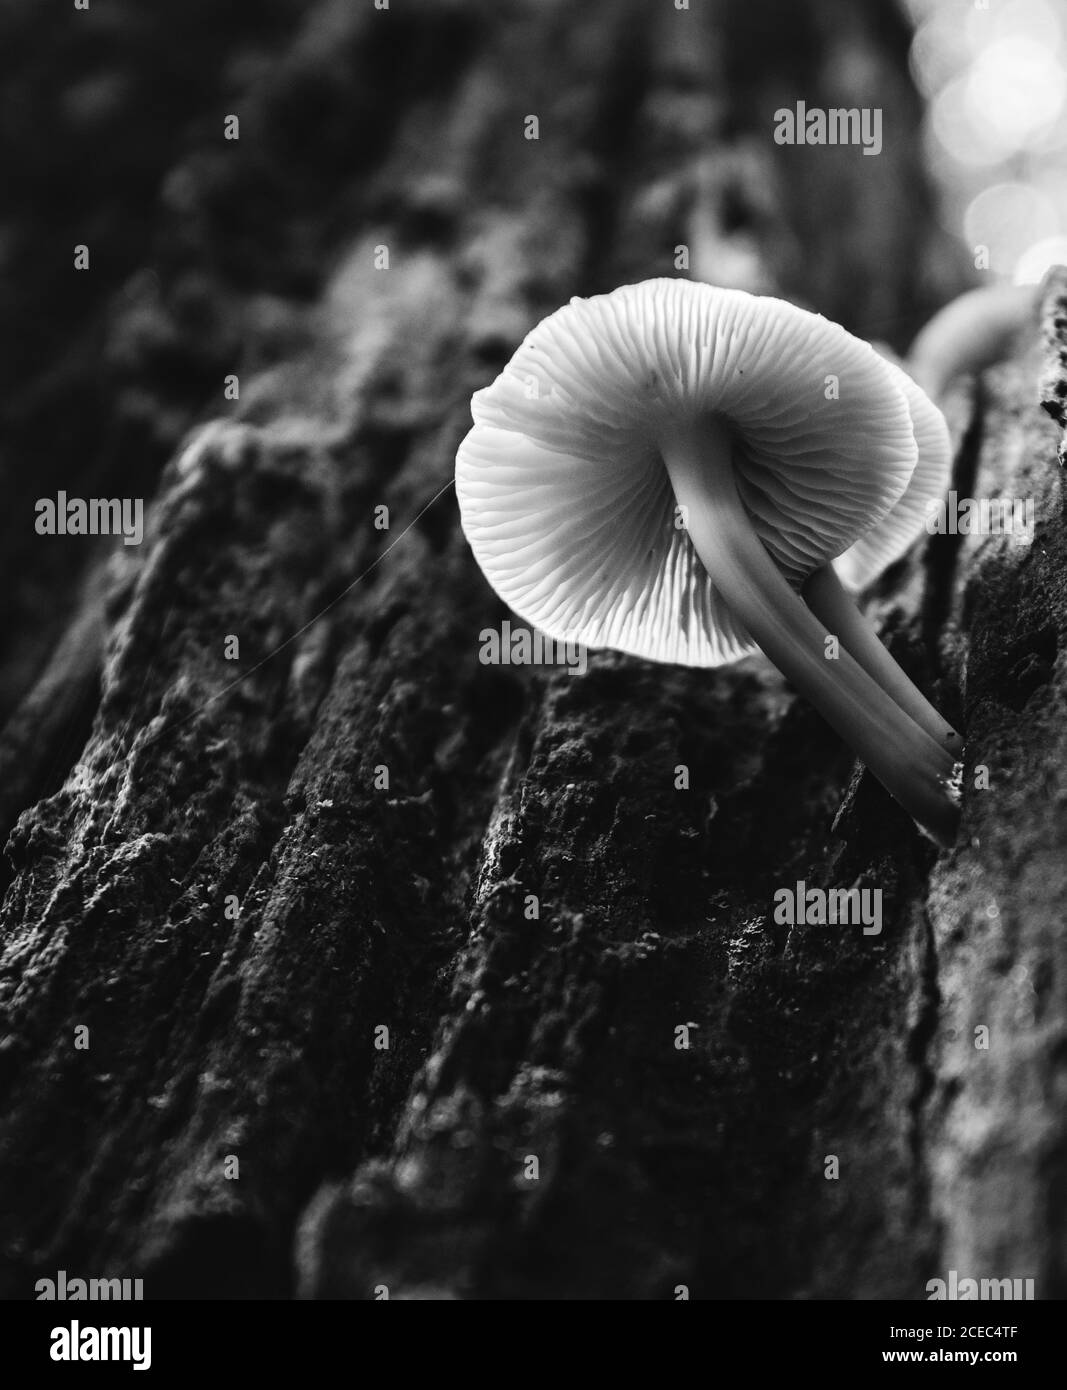 Primo piano dal basso vista di fungo con sottile stipe crescente su corteccia di tronco di albero Foto Stock